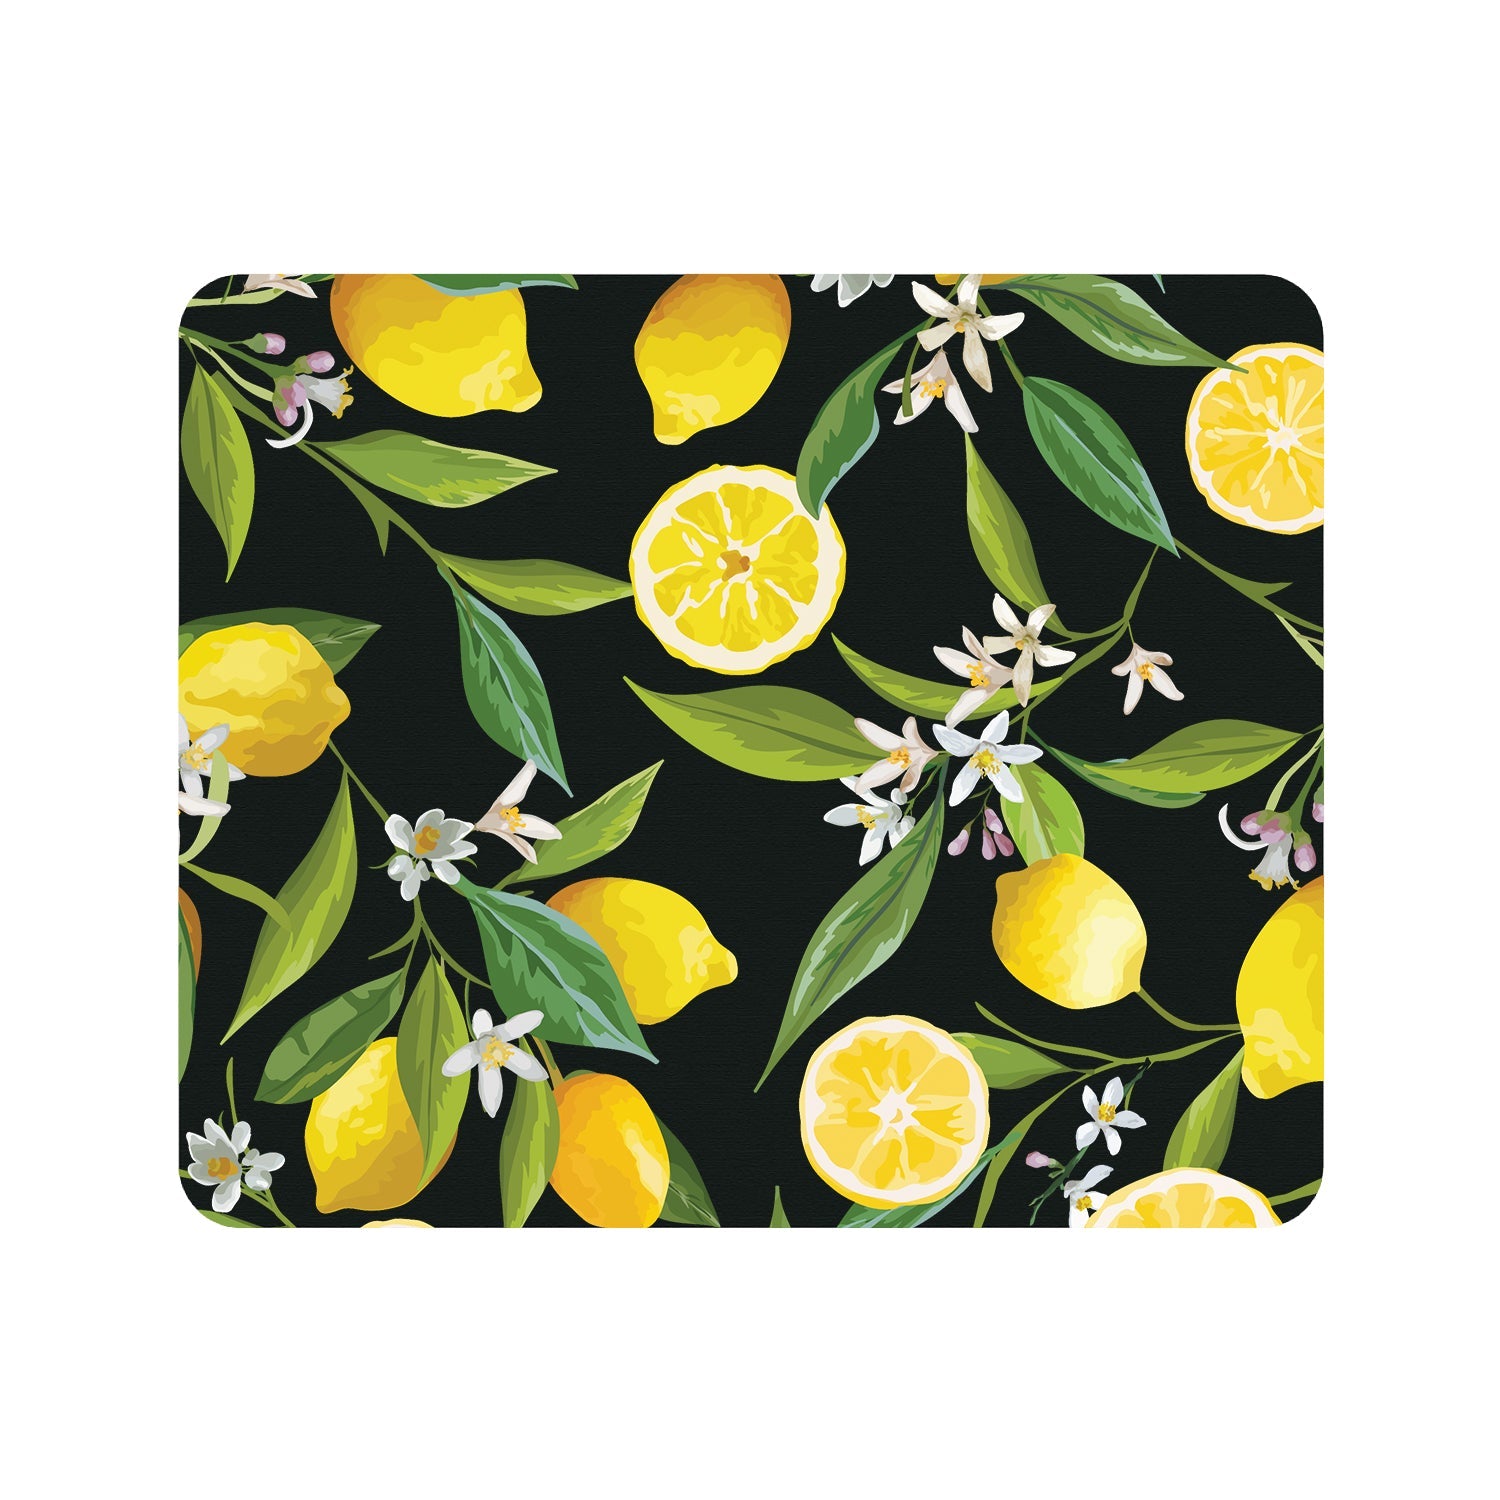 OTM Essentials Prints Series Mouse Pad, Lemon Love